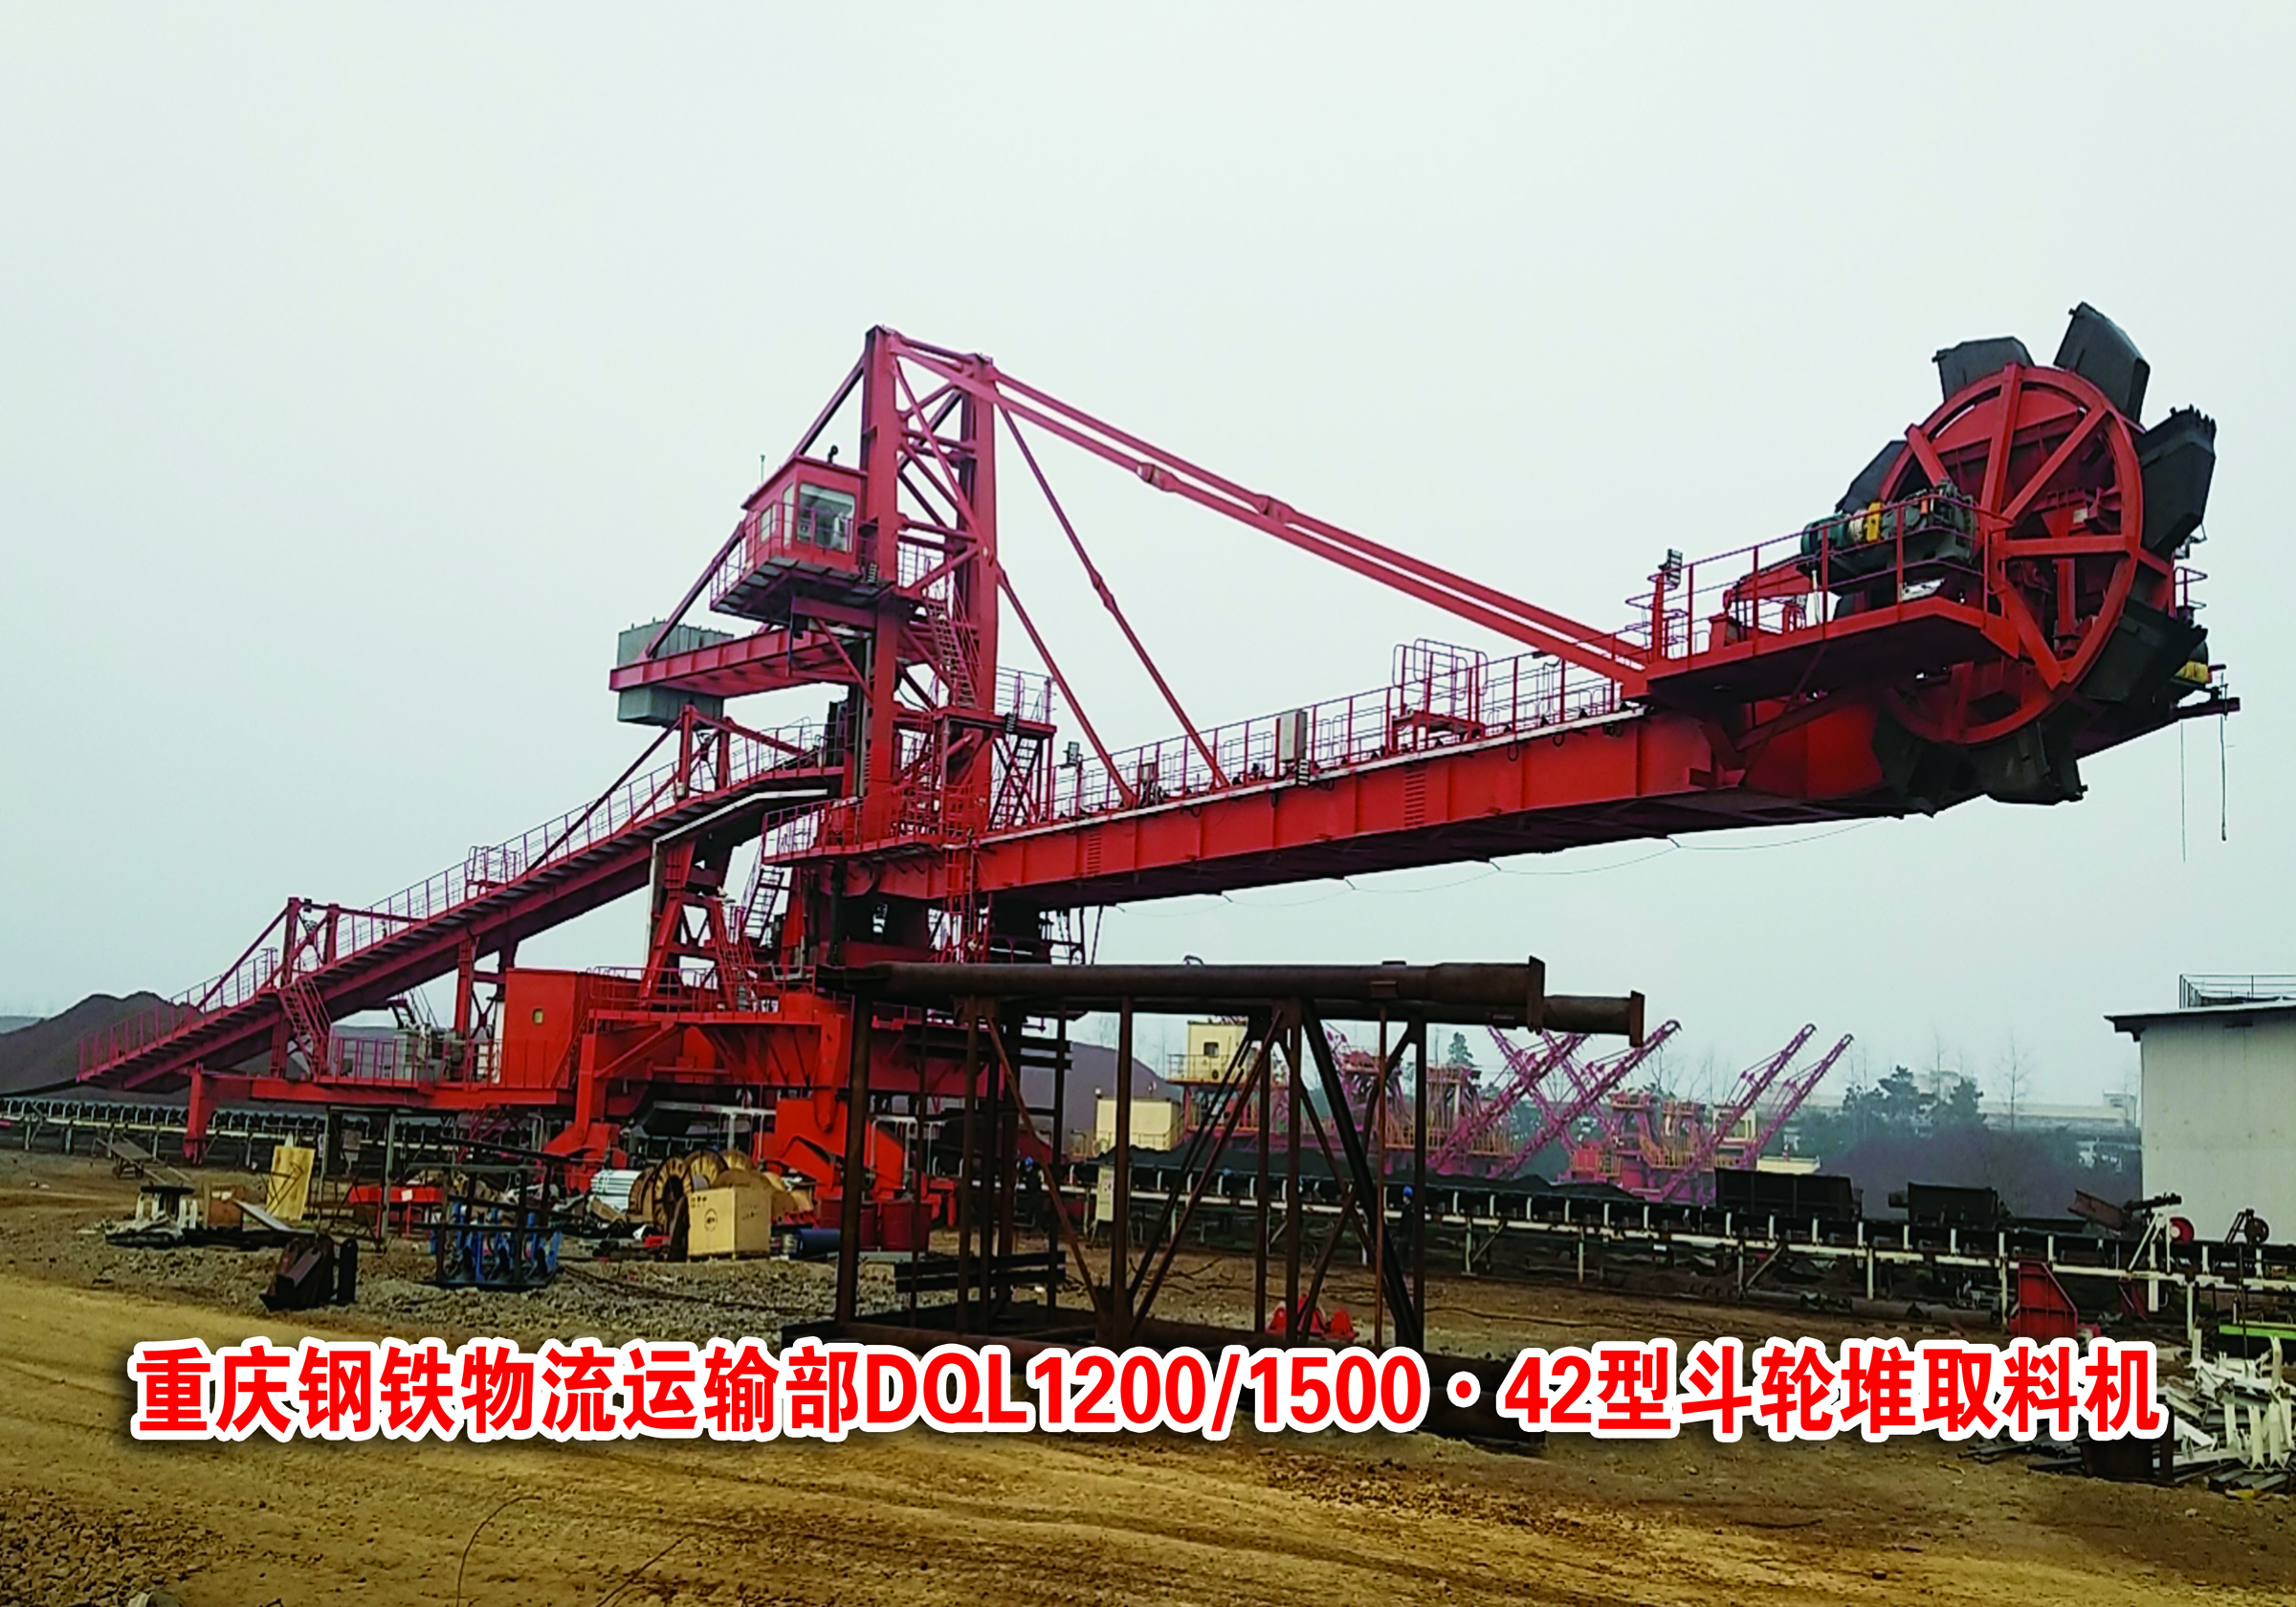 重庆钢铁物流运输部DQL1200 1500.42型斗轮堆取料机